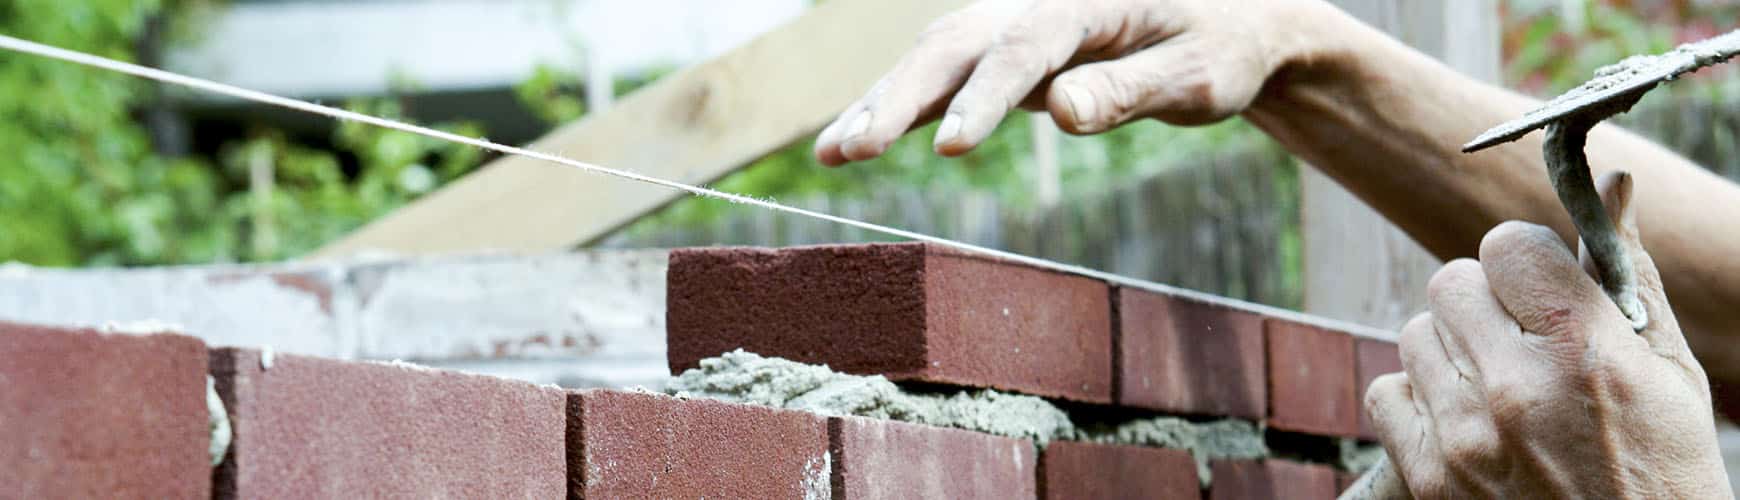 AGX tilbyder murerarbejde af høj kvalitet